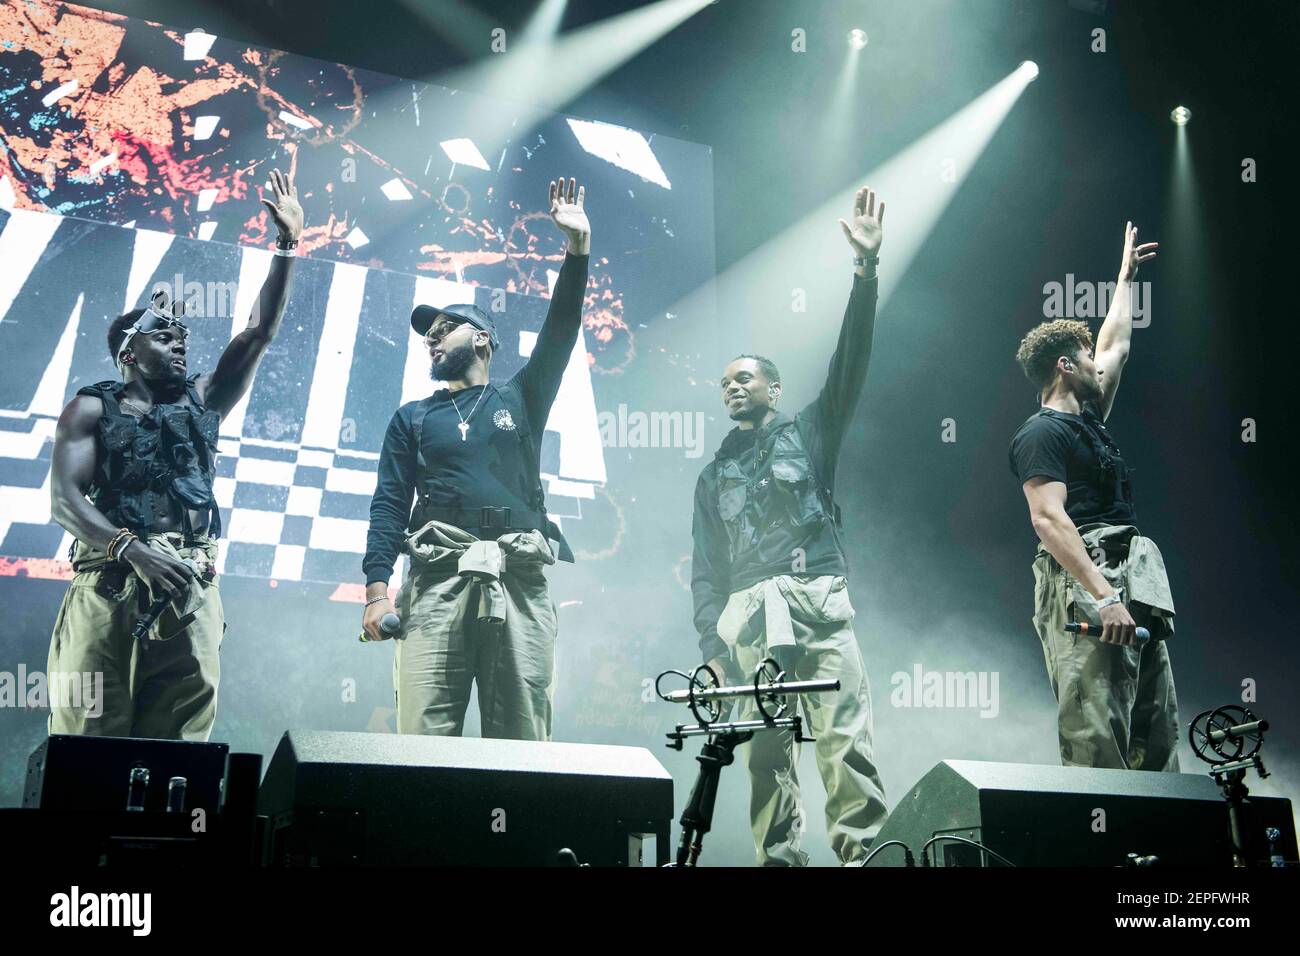 RAK-Su spielt live auf der Bühne der Kiss Haunted House Party in der SSE Wembley Arena, Wembley, London. Bilddatum: Freitag, 26th. Oktober 2018. Bildnachweis sollte lauten: David Jensen Stockfoto